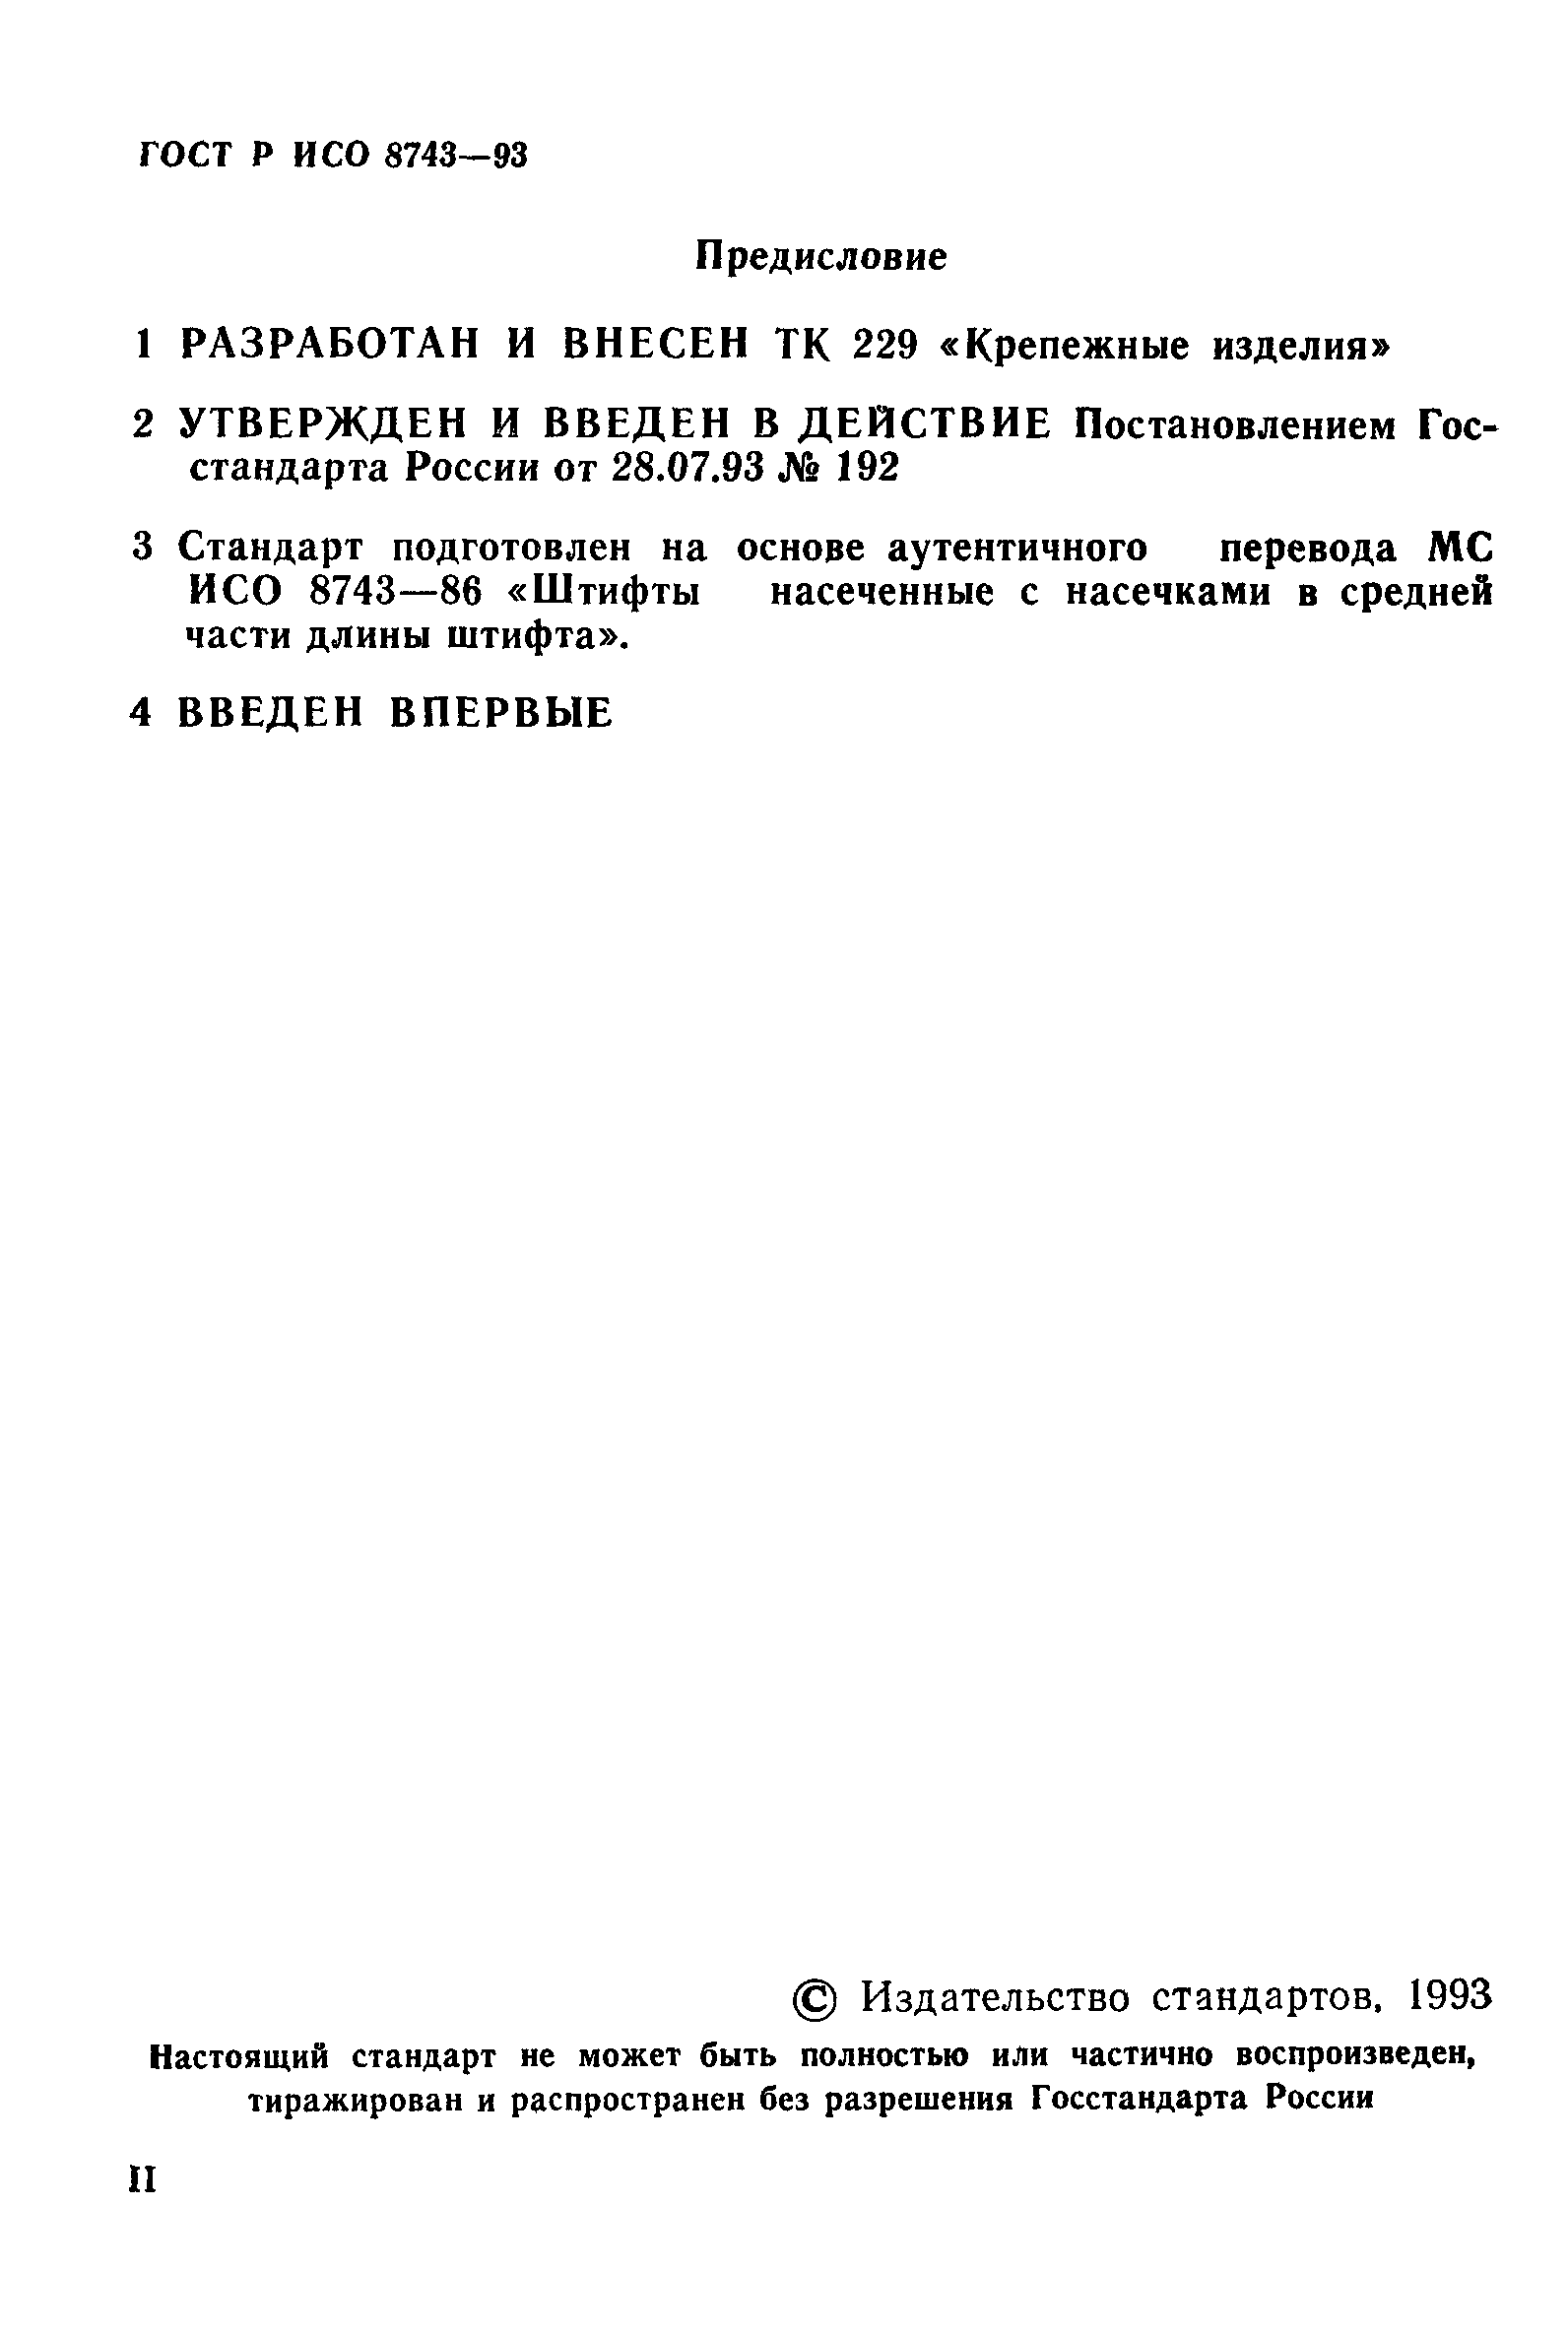 ГОСТ Р ИСО 8743-93